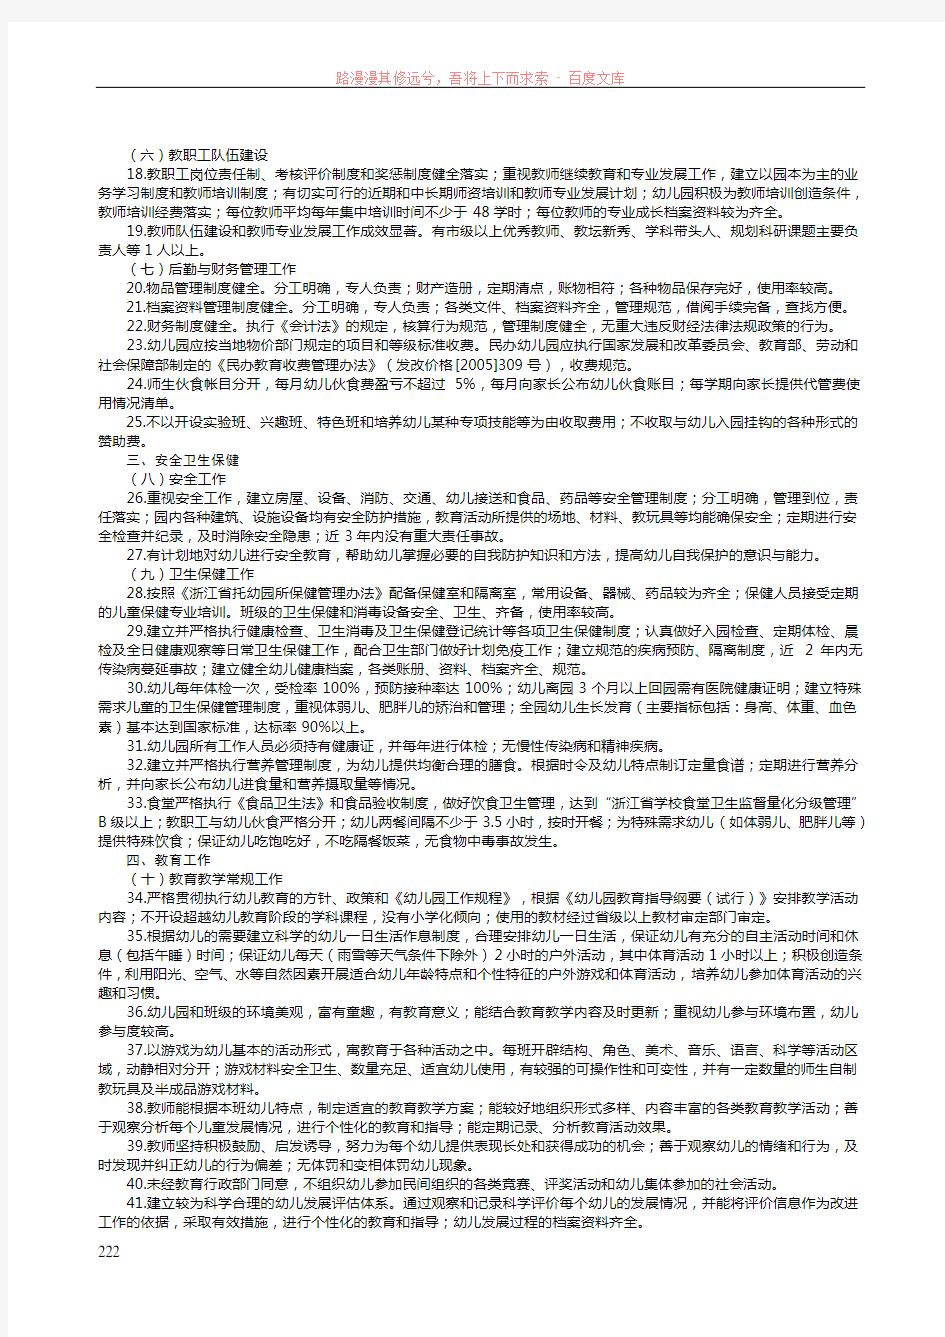 浙江省幼儿园等级评定标准试行 (2)